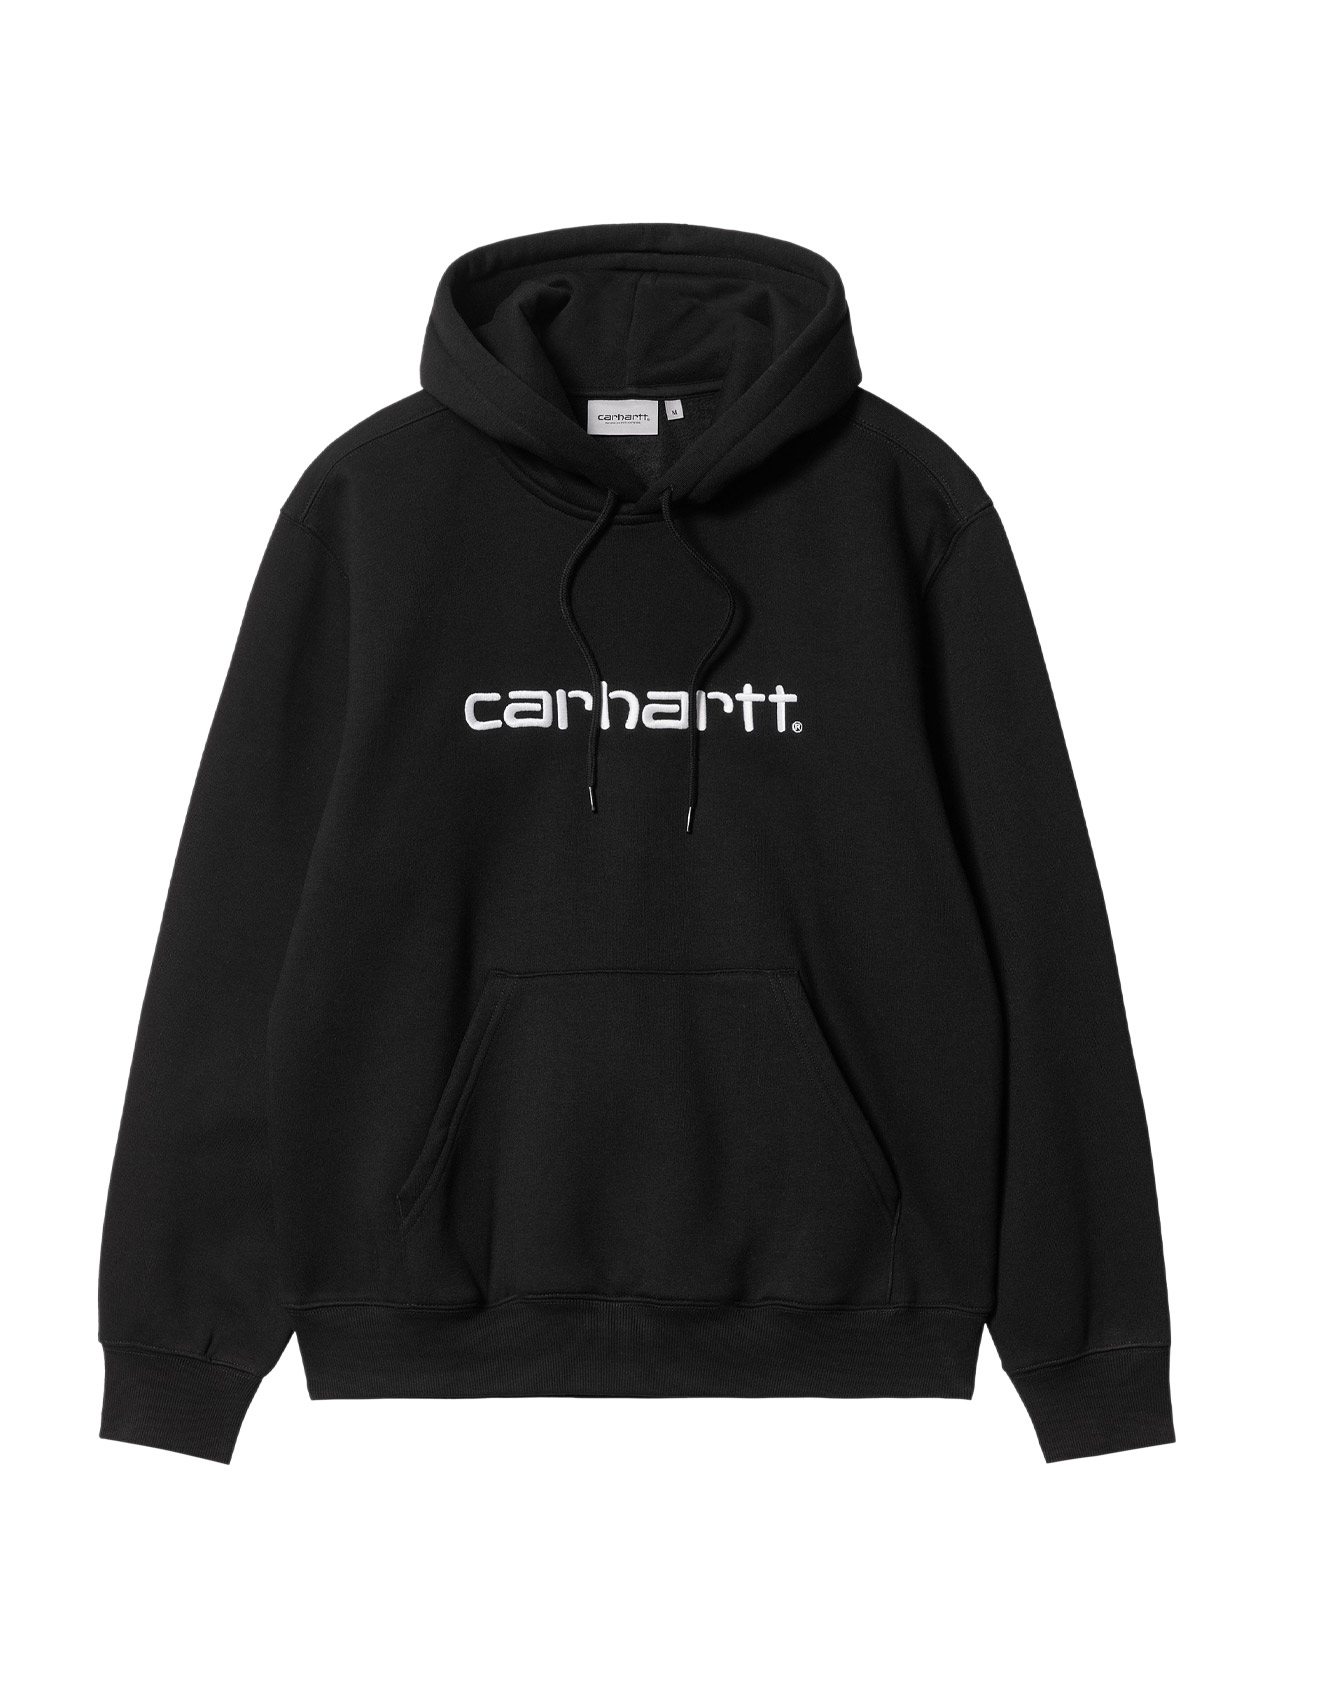 Carhartt WIP – Hooded Carhartt Sweatshirt